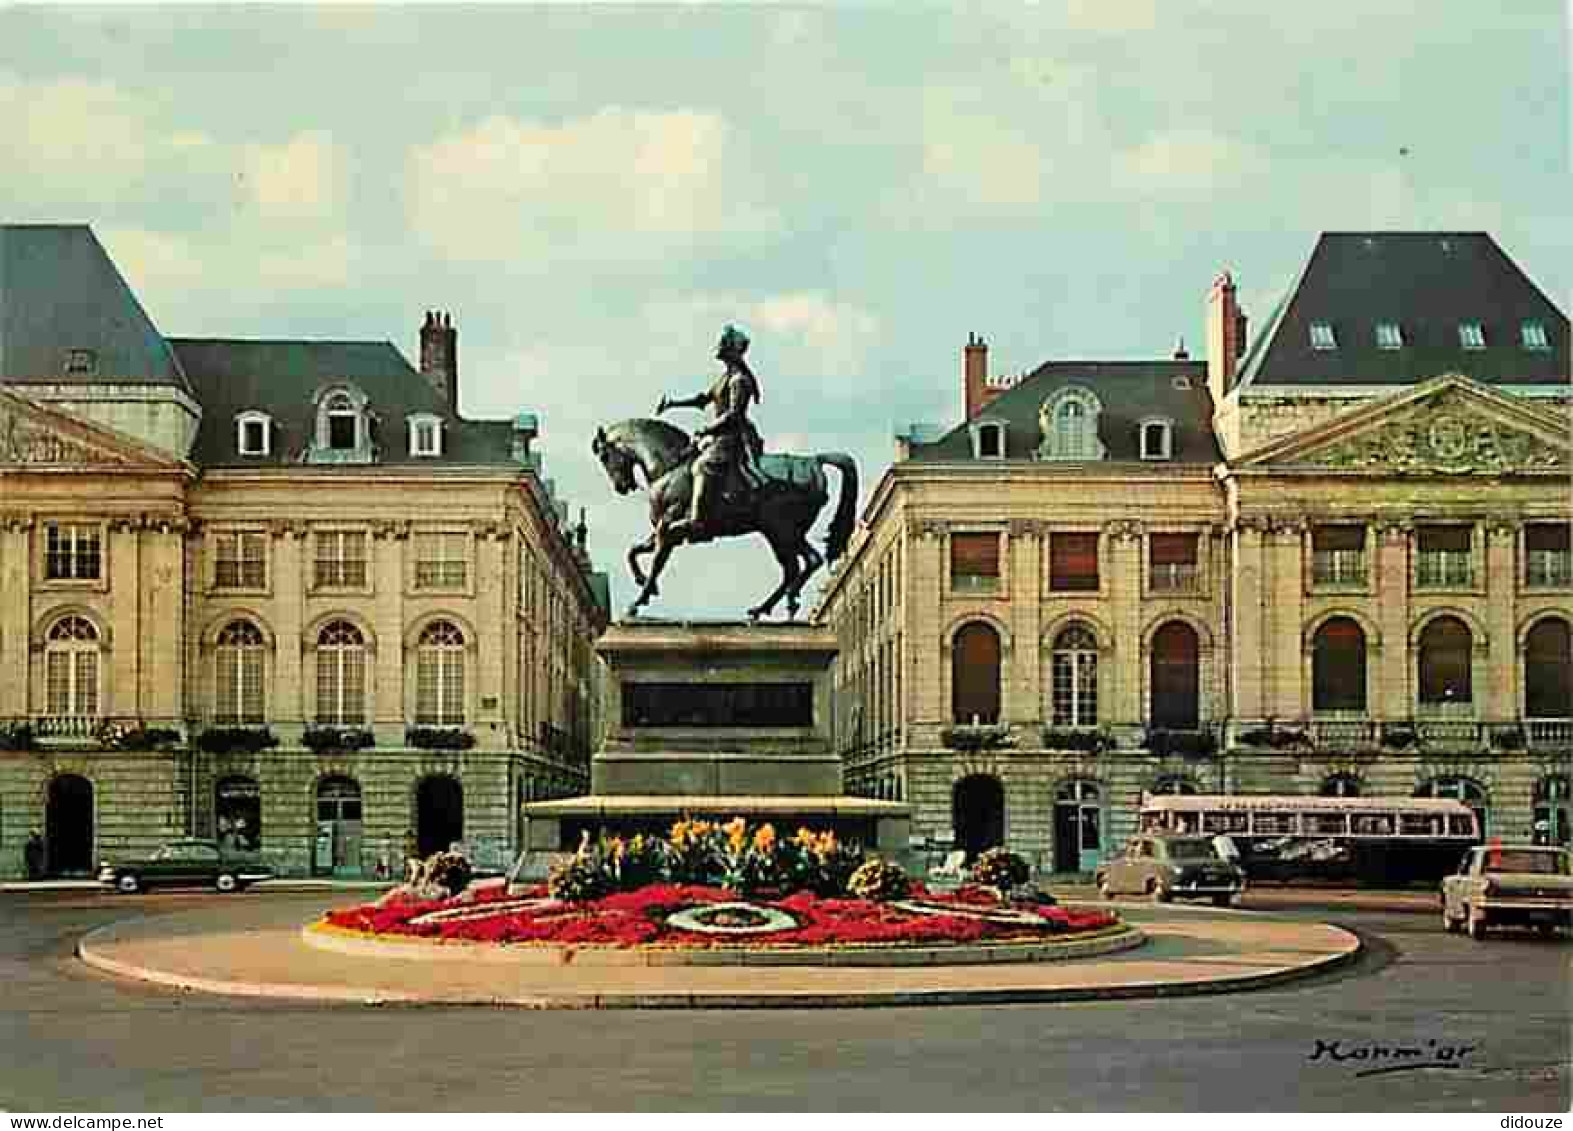 45 - Orléans - Place Du Martroi - Statue équestre De Jeanne D'Arc - Automobiles - Bus - Autocar - Fleurs - CPM - Voir Sc - Orleans